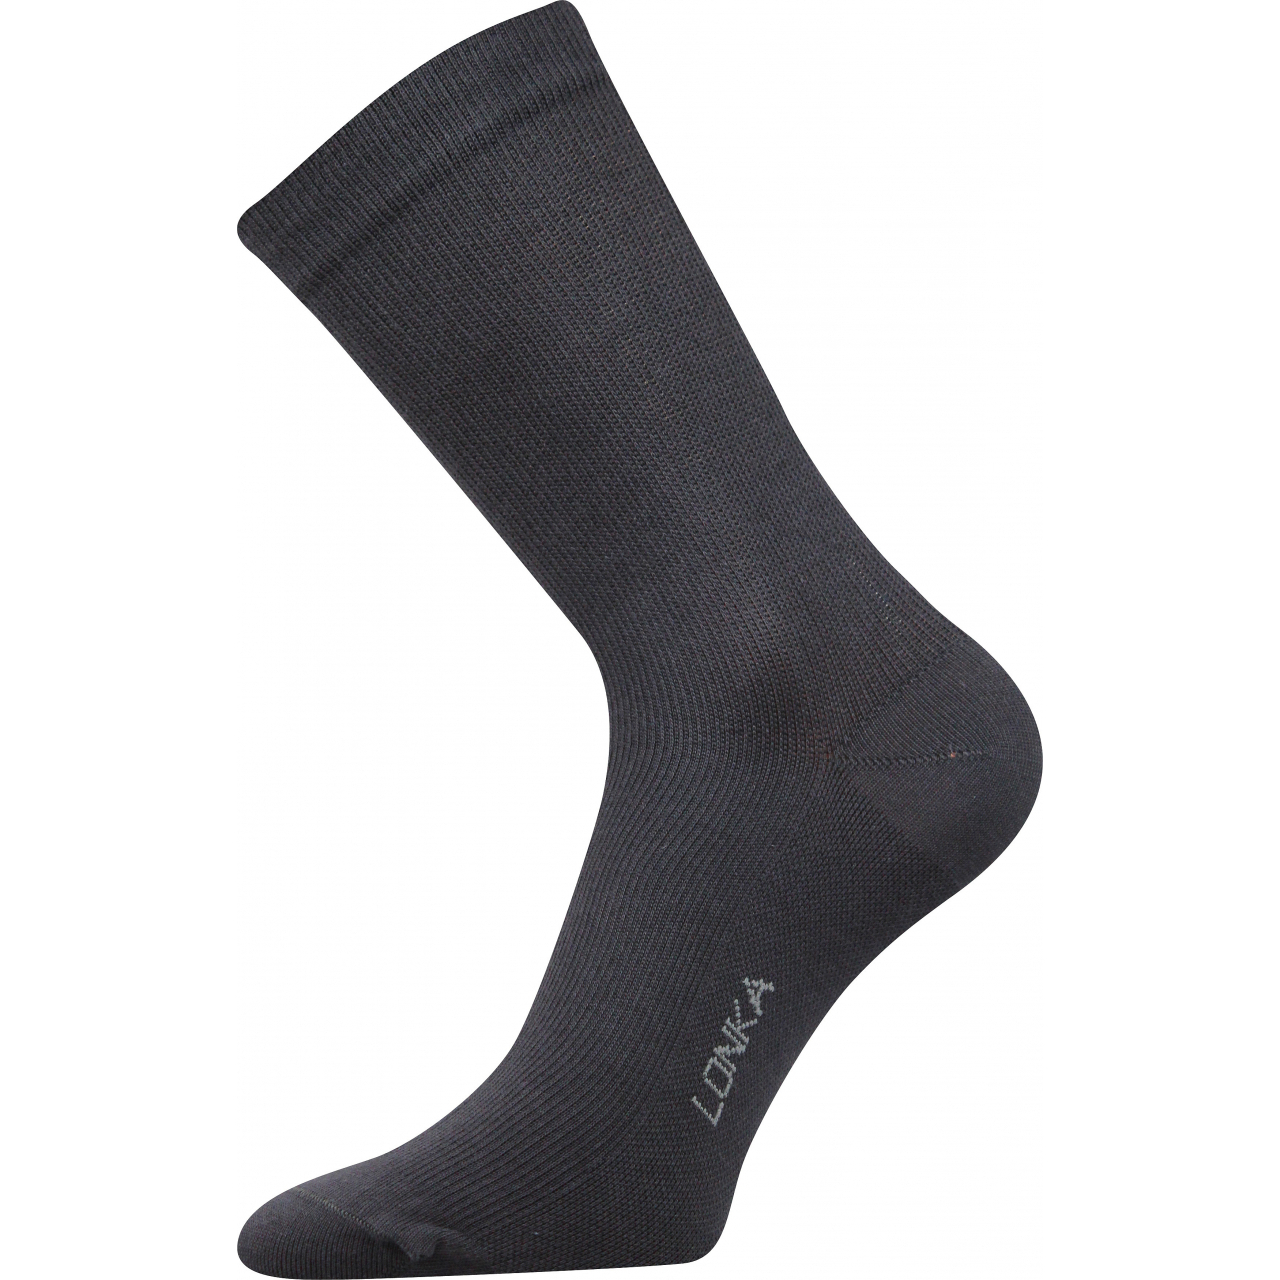 Ponožky kompresní Lonka Kooper - tmavě šedé, 43-46